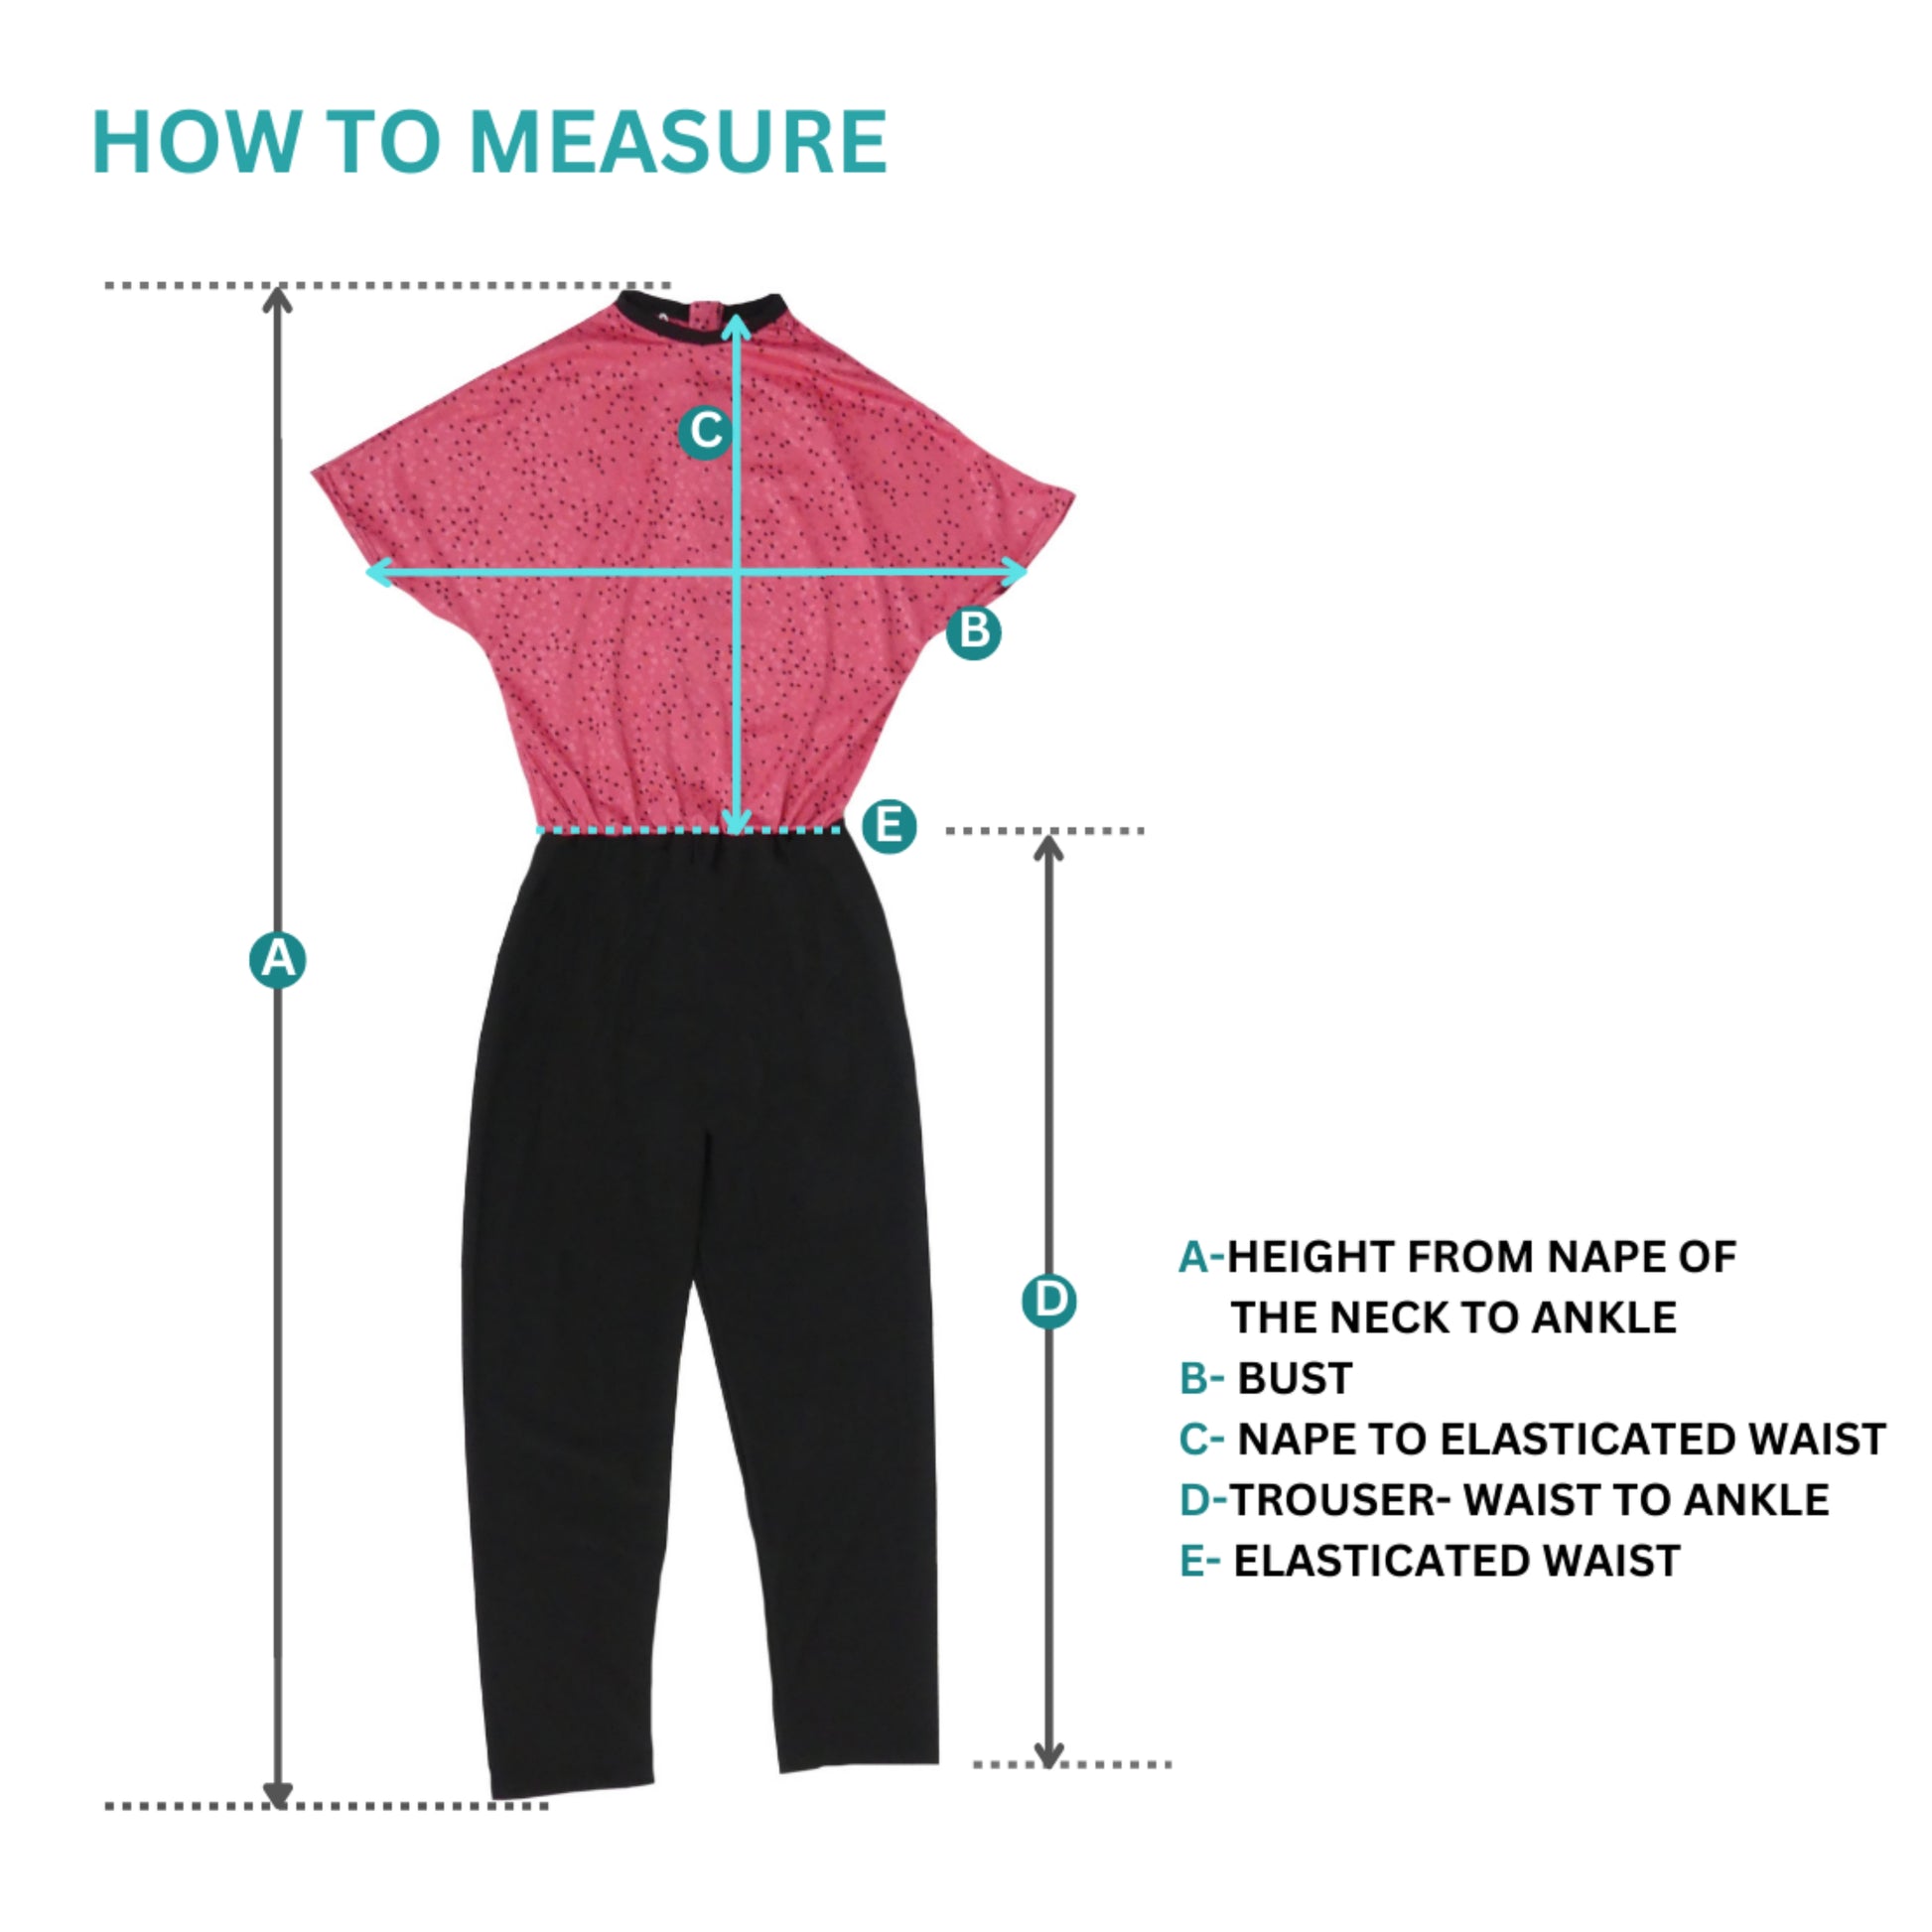 adaptive clothing size guide uk